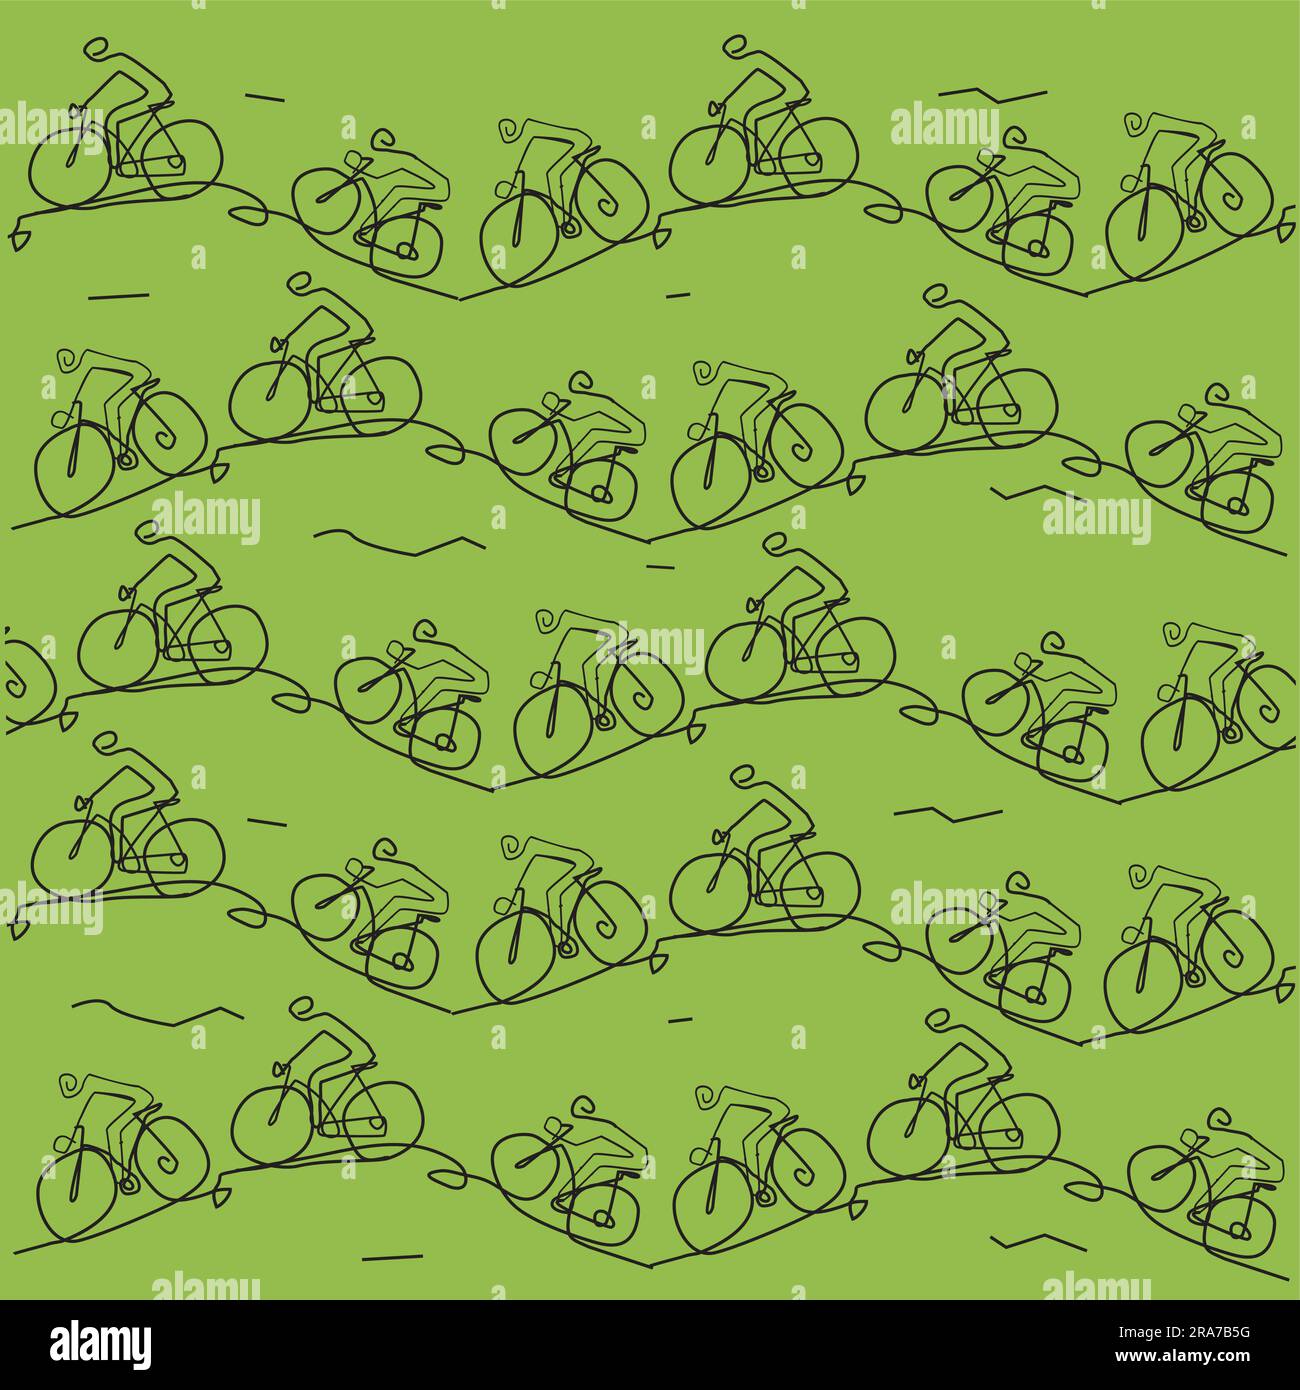 Mountain bike, line art stilizzata, divertente sfondo decorativo. Immagine di ciclisti in mountain bike che percorrono un terreno collinare, sfondo verde. Illustrazione Vettoriale